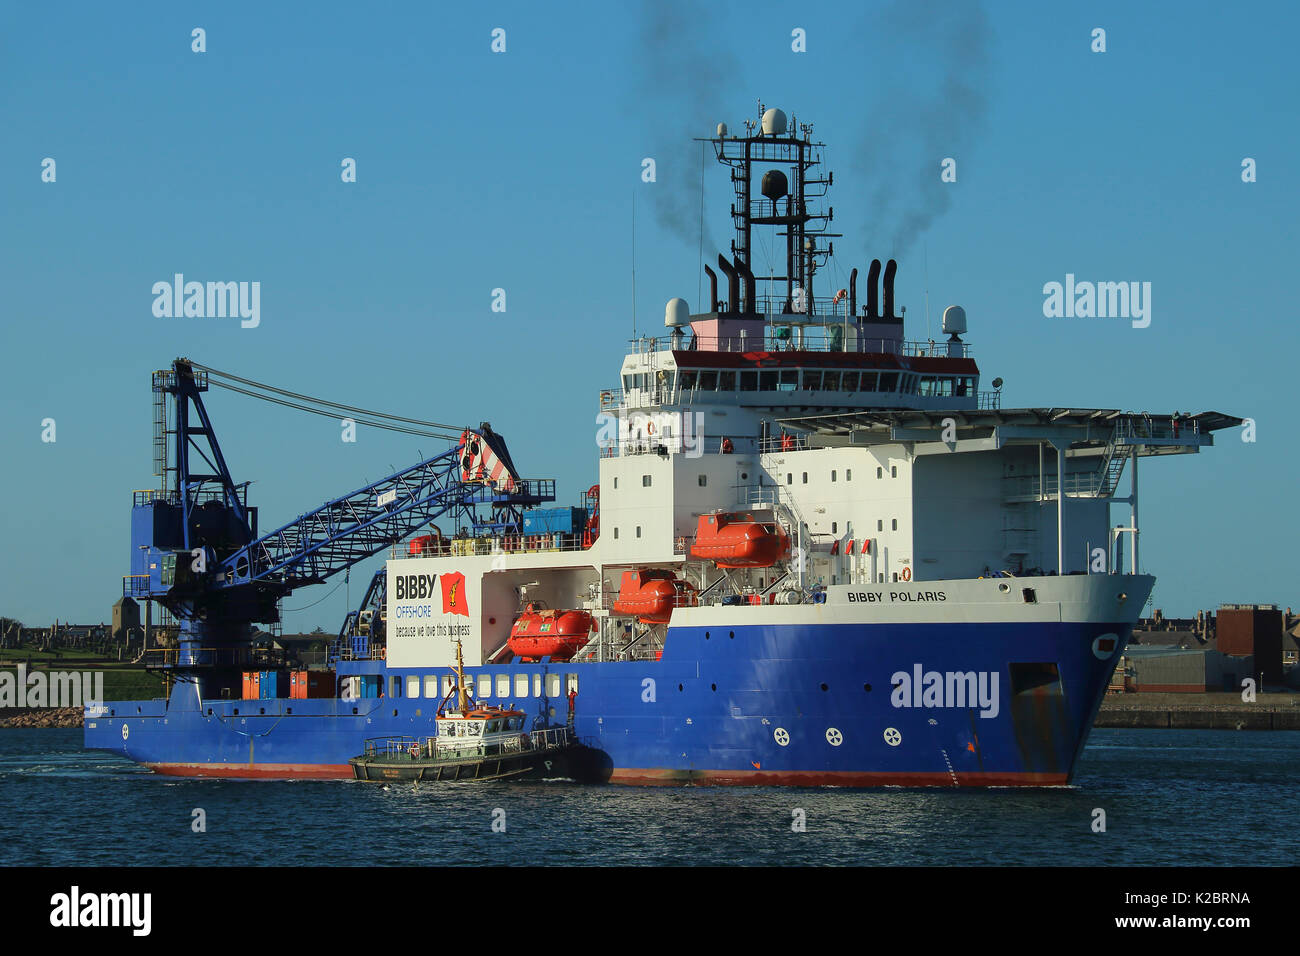 Dive sostegno della nave 'Bibby Polaris' a Peterhead Harbour, ottobre 2014. Tutti i non-usi editoriali deve essere eliminato singolarmente. Foto Stock